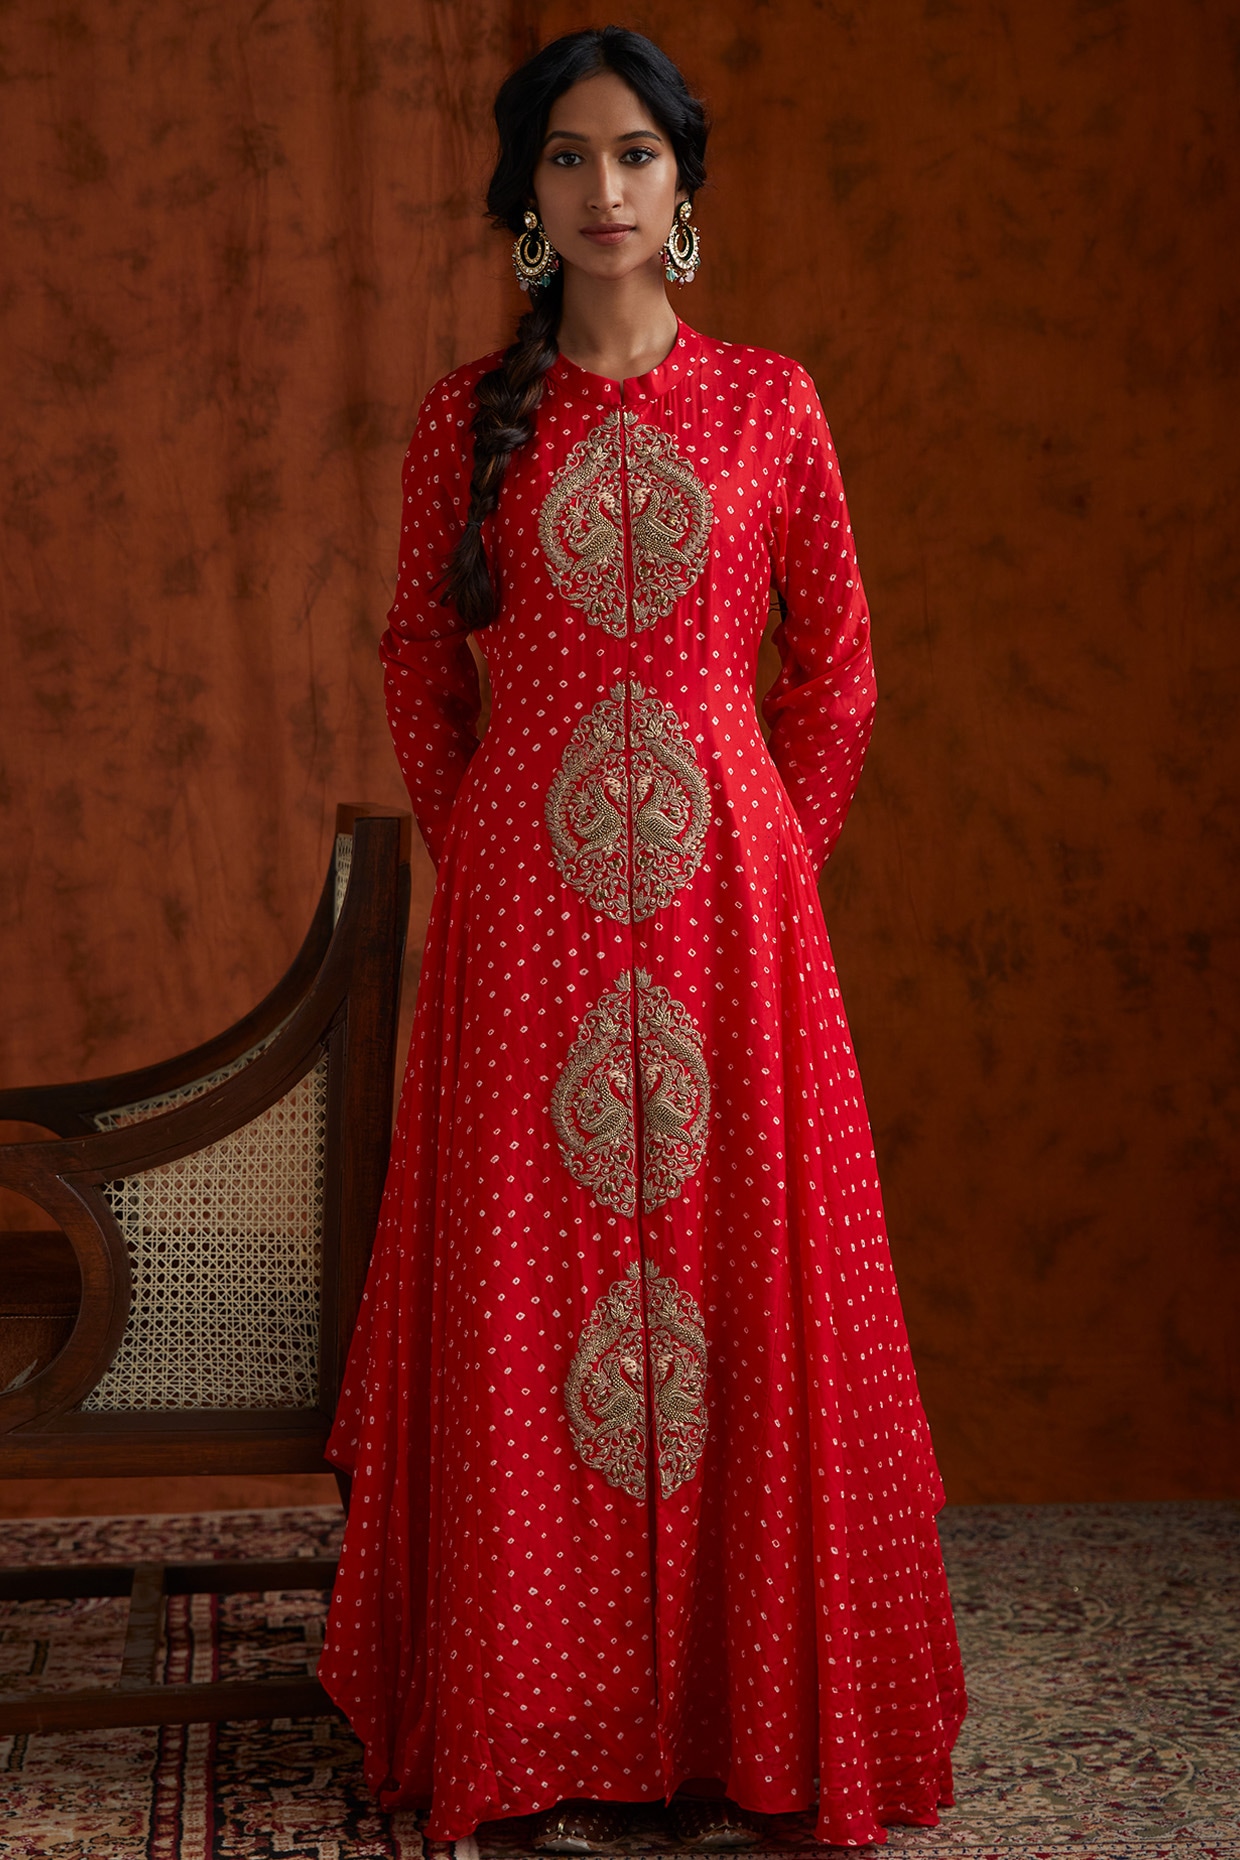 Pink Kalidar Bandhej Gown with Gota Patti Crafting